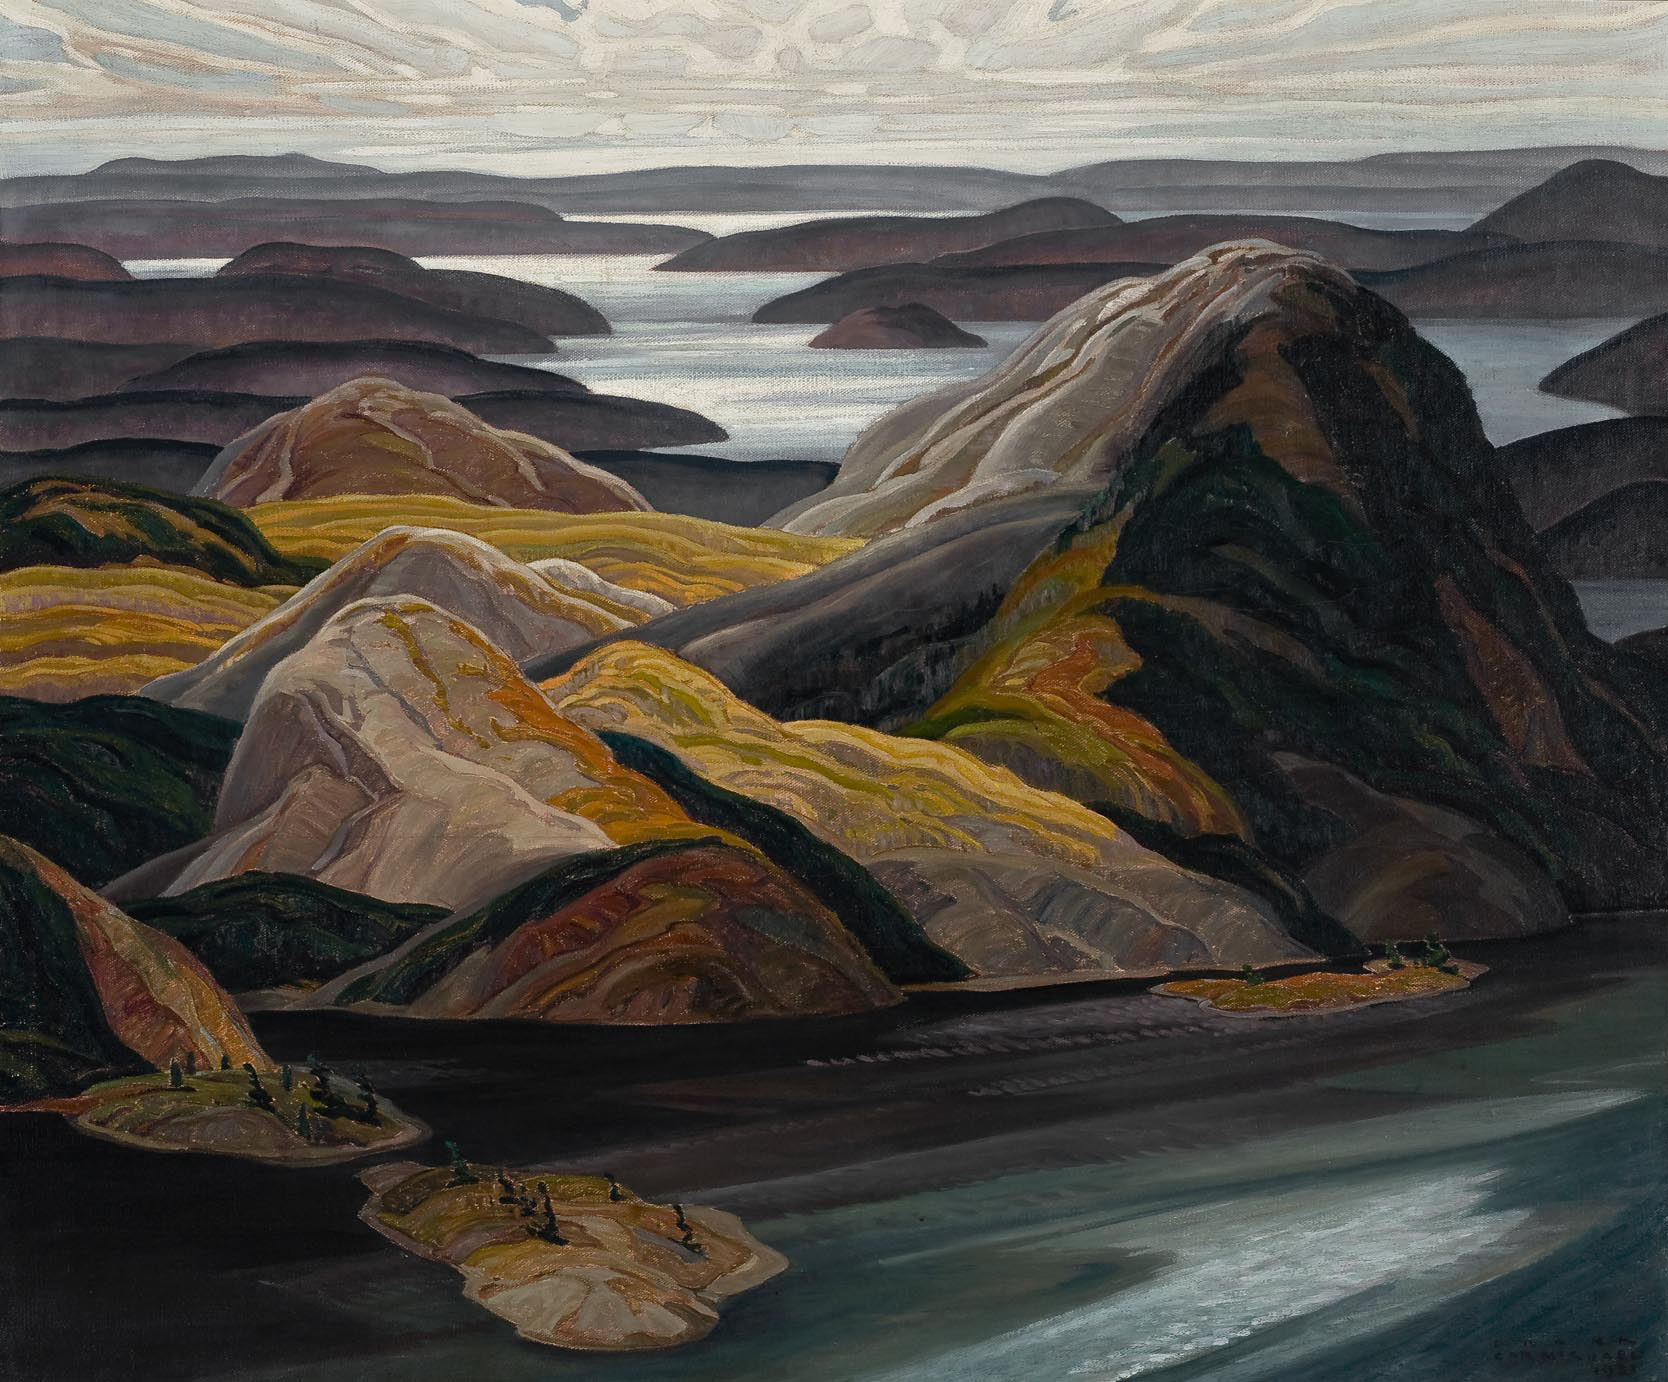 Группа пейзаж. Франклин Кармайкл. Франклин Кармайкл (Franklin Carmichael). Франклин Кармайкл картины. Franklin Carmichael (Canadian, 1890-1945).